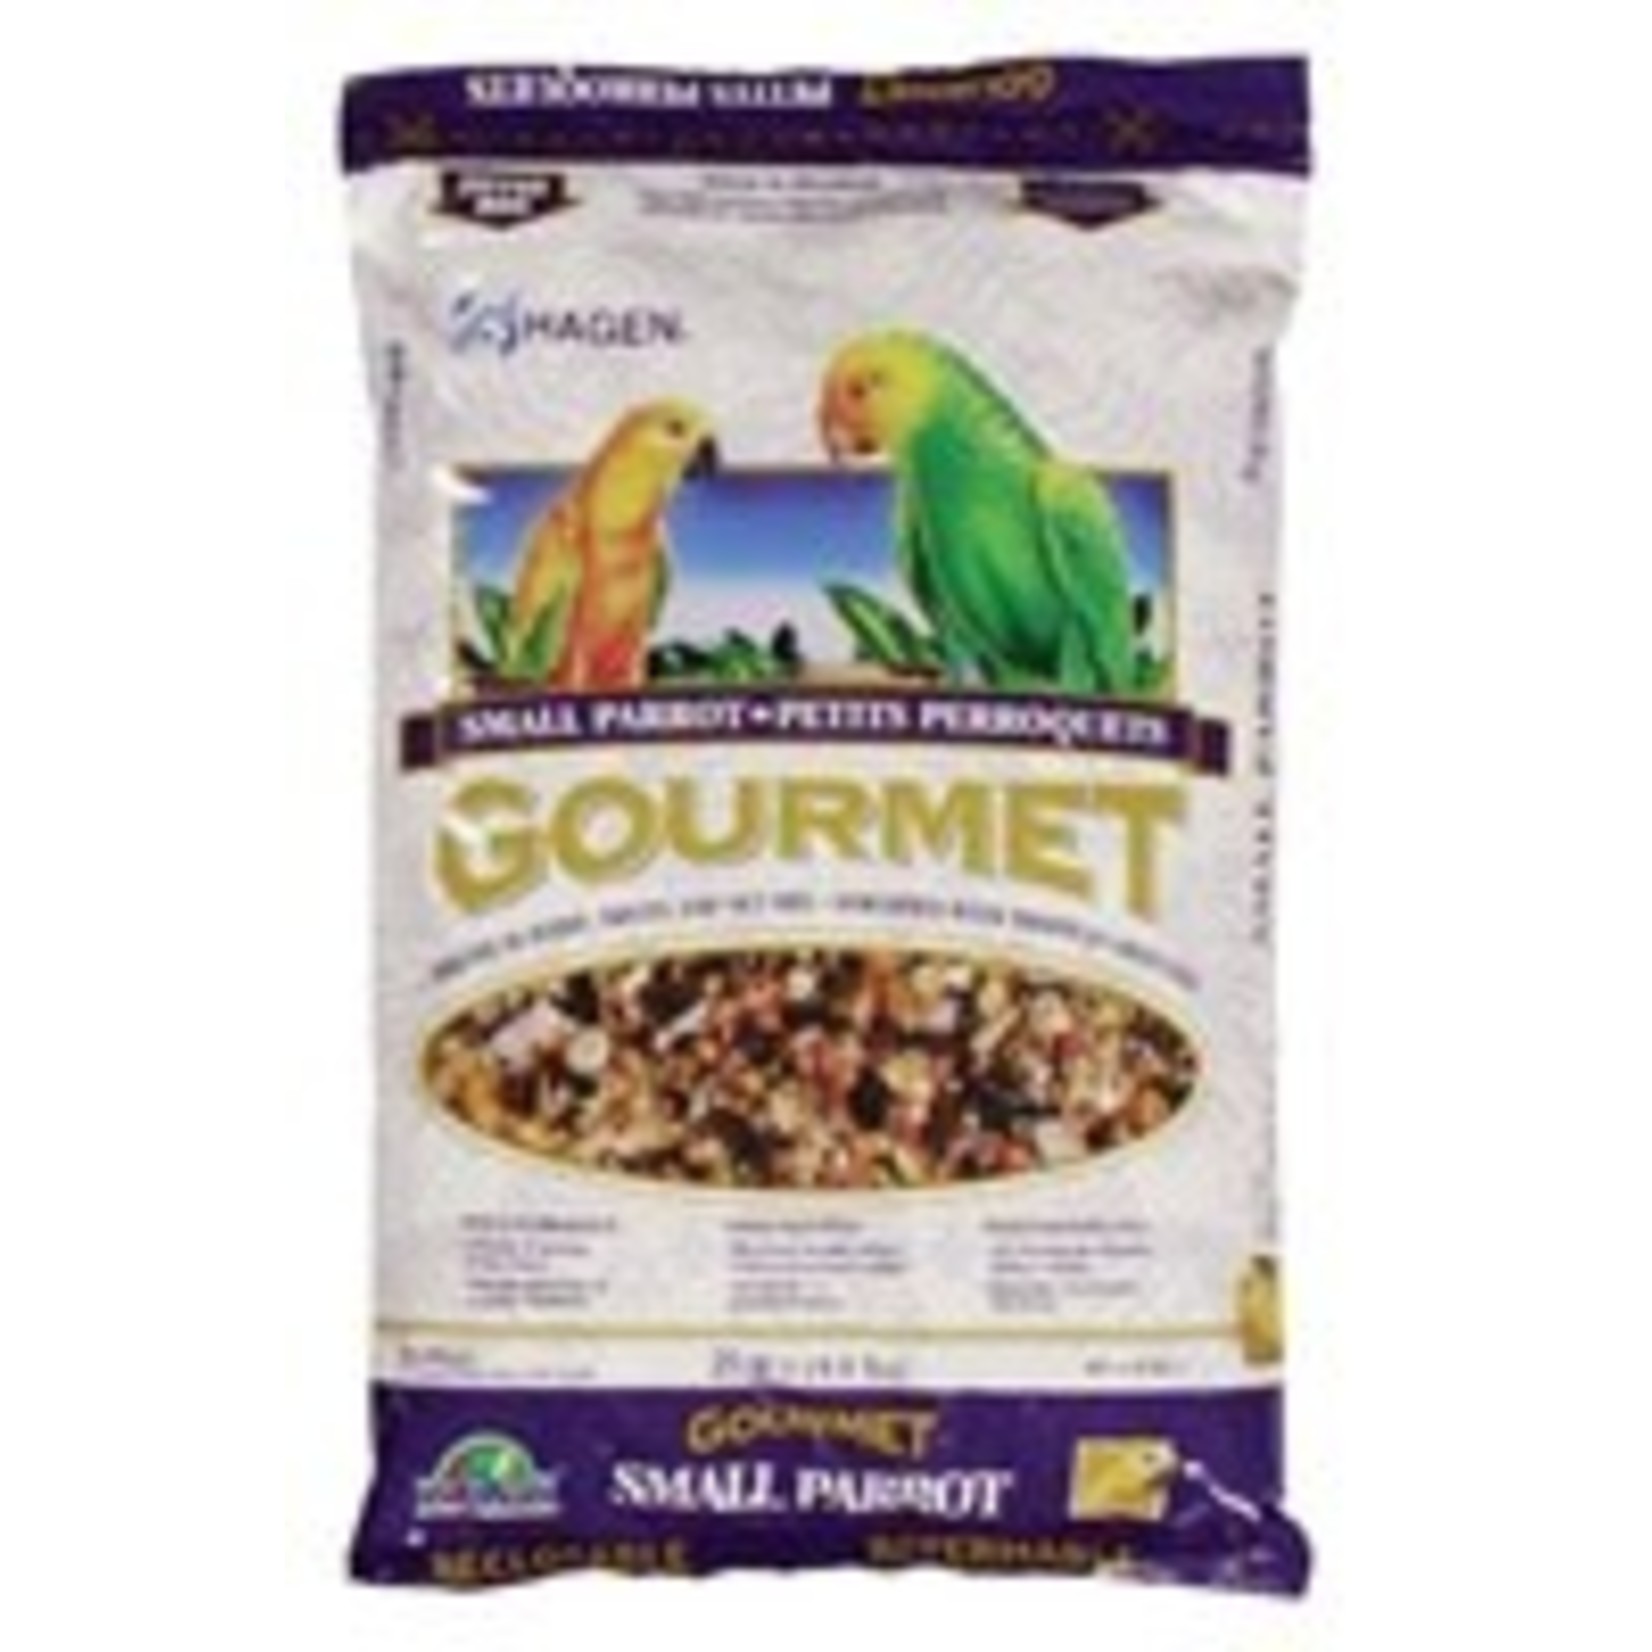 Hagen Gourmet Small Parrot Seed Mix, 2 kg (4.4 lb)